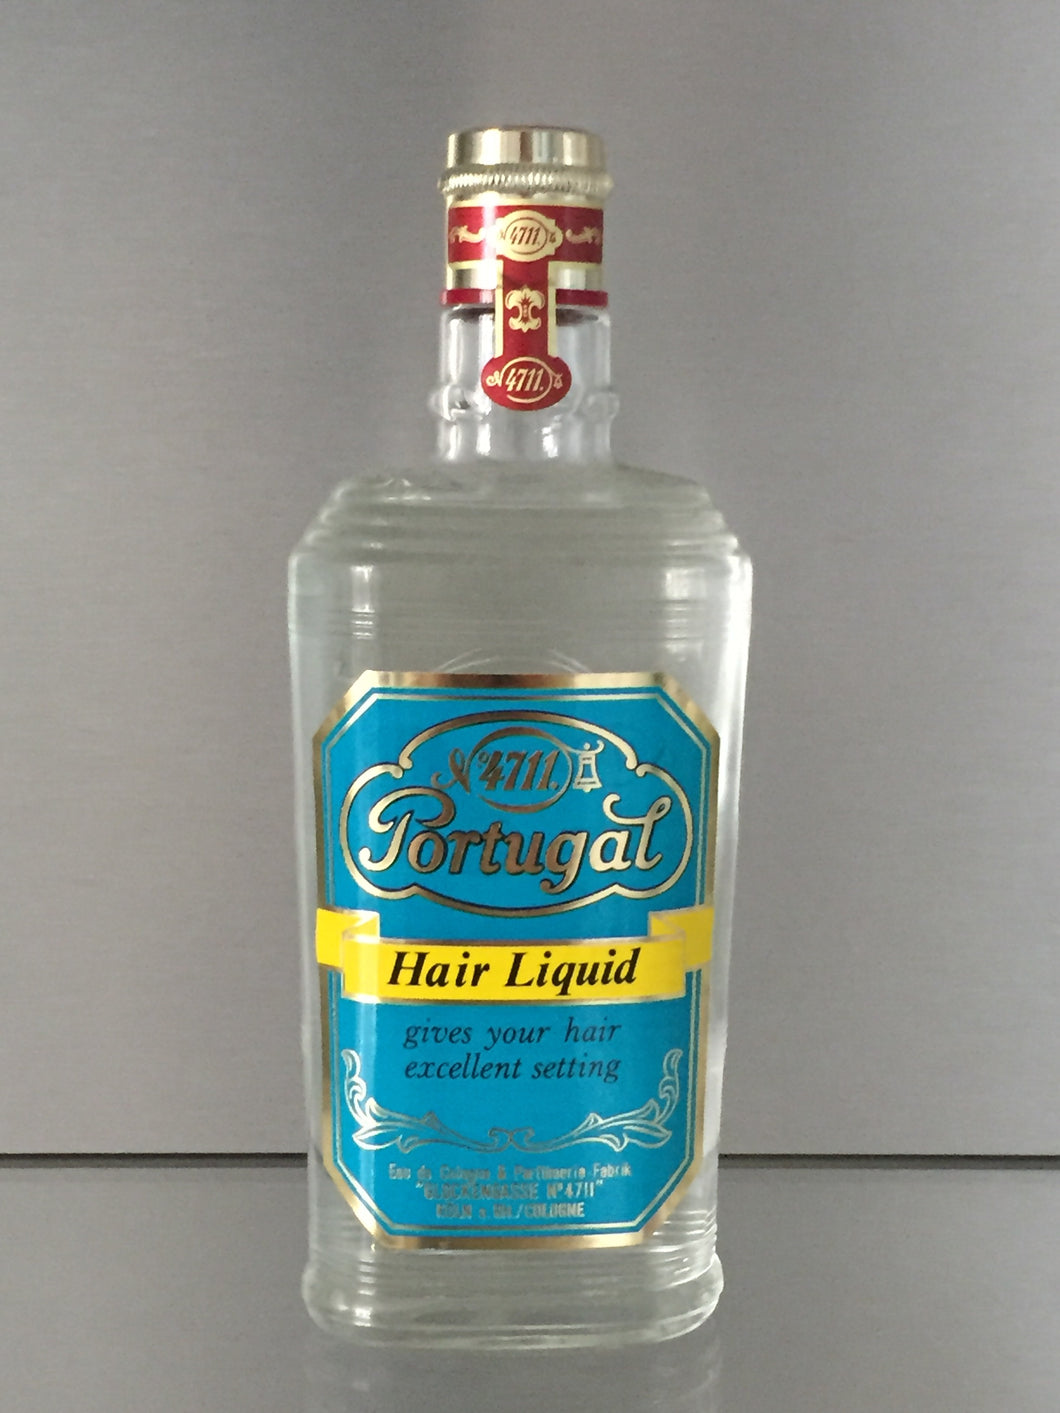 PORTUGAL, Hair Liquid, 150ml - 4711 